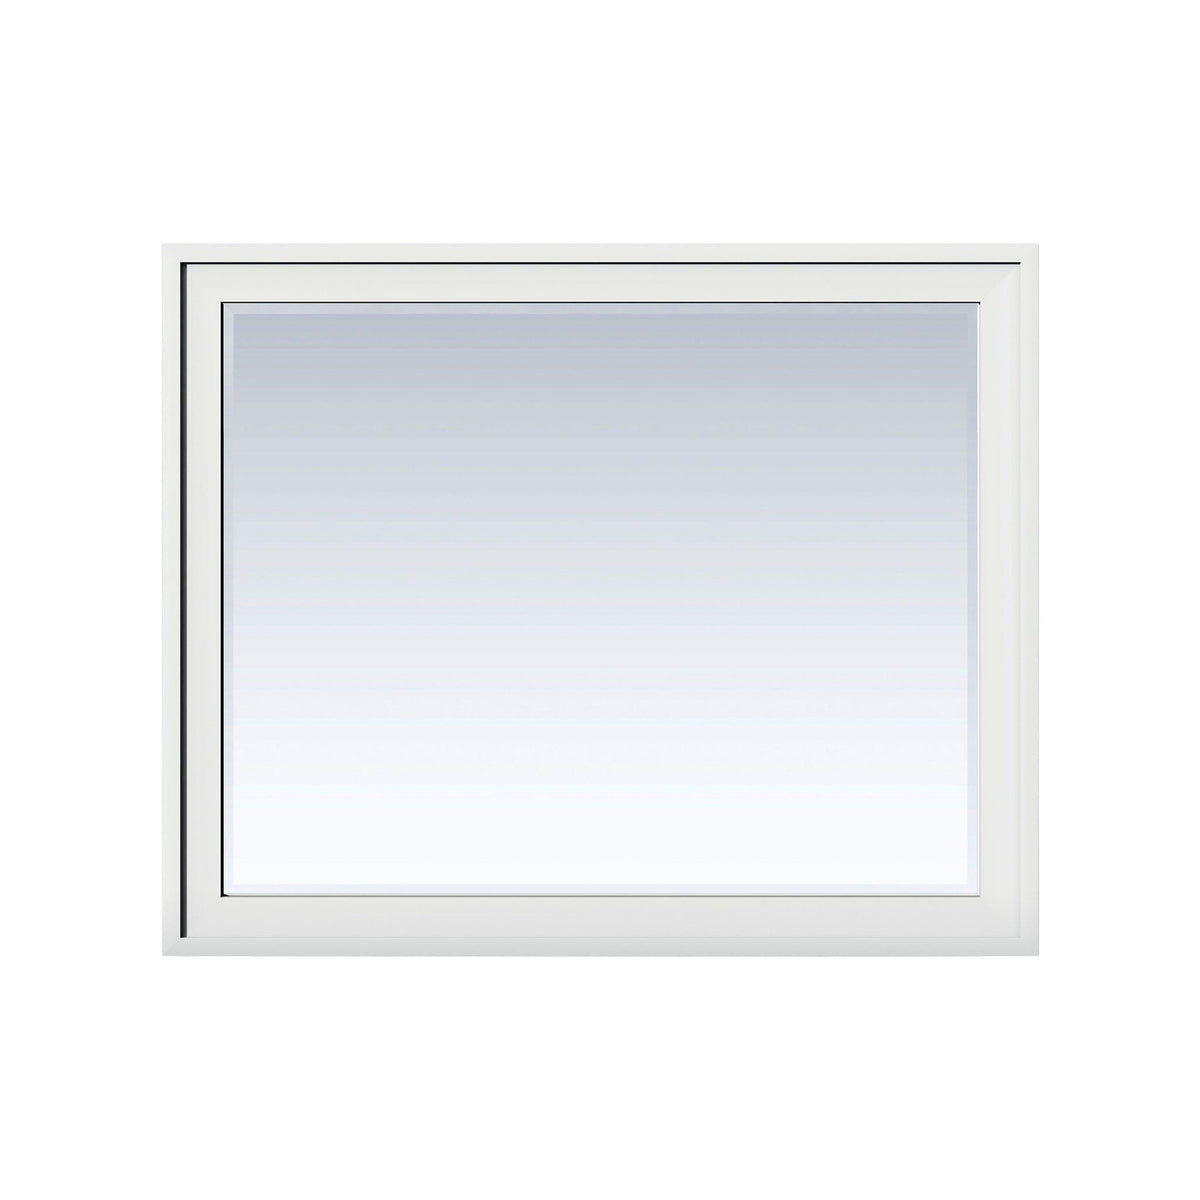 48" Addison Rectangular Mirror, Glossy White